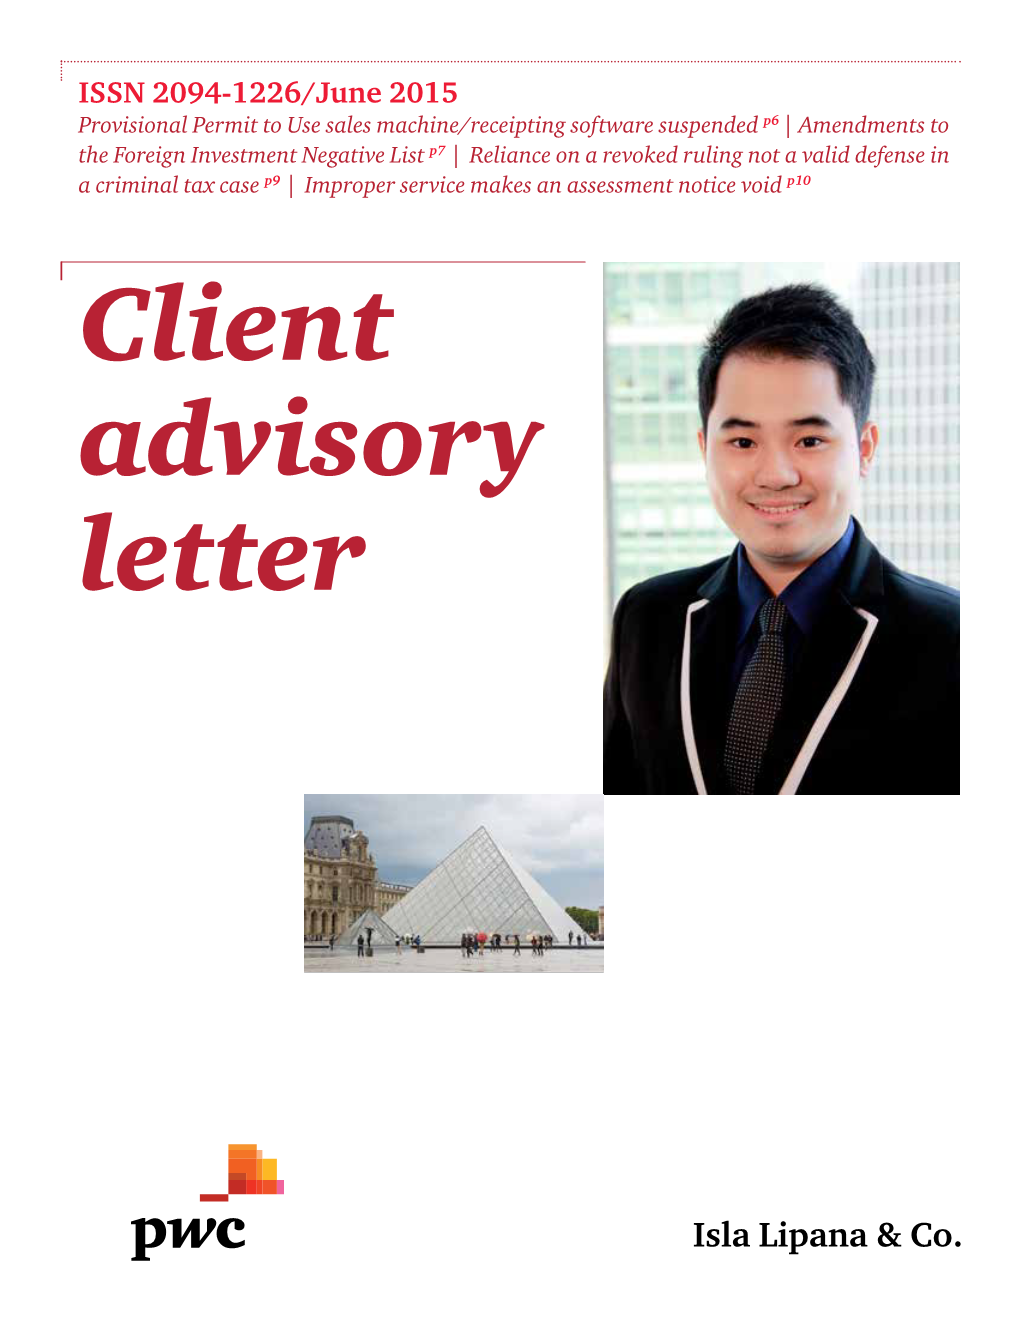 Client Advisory Letter